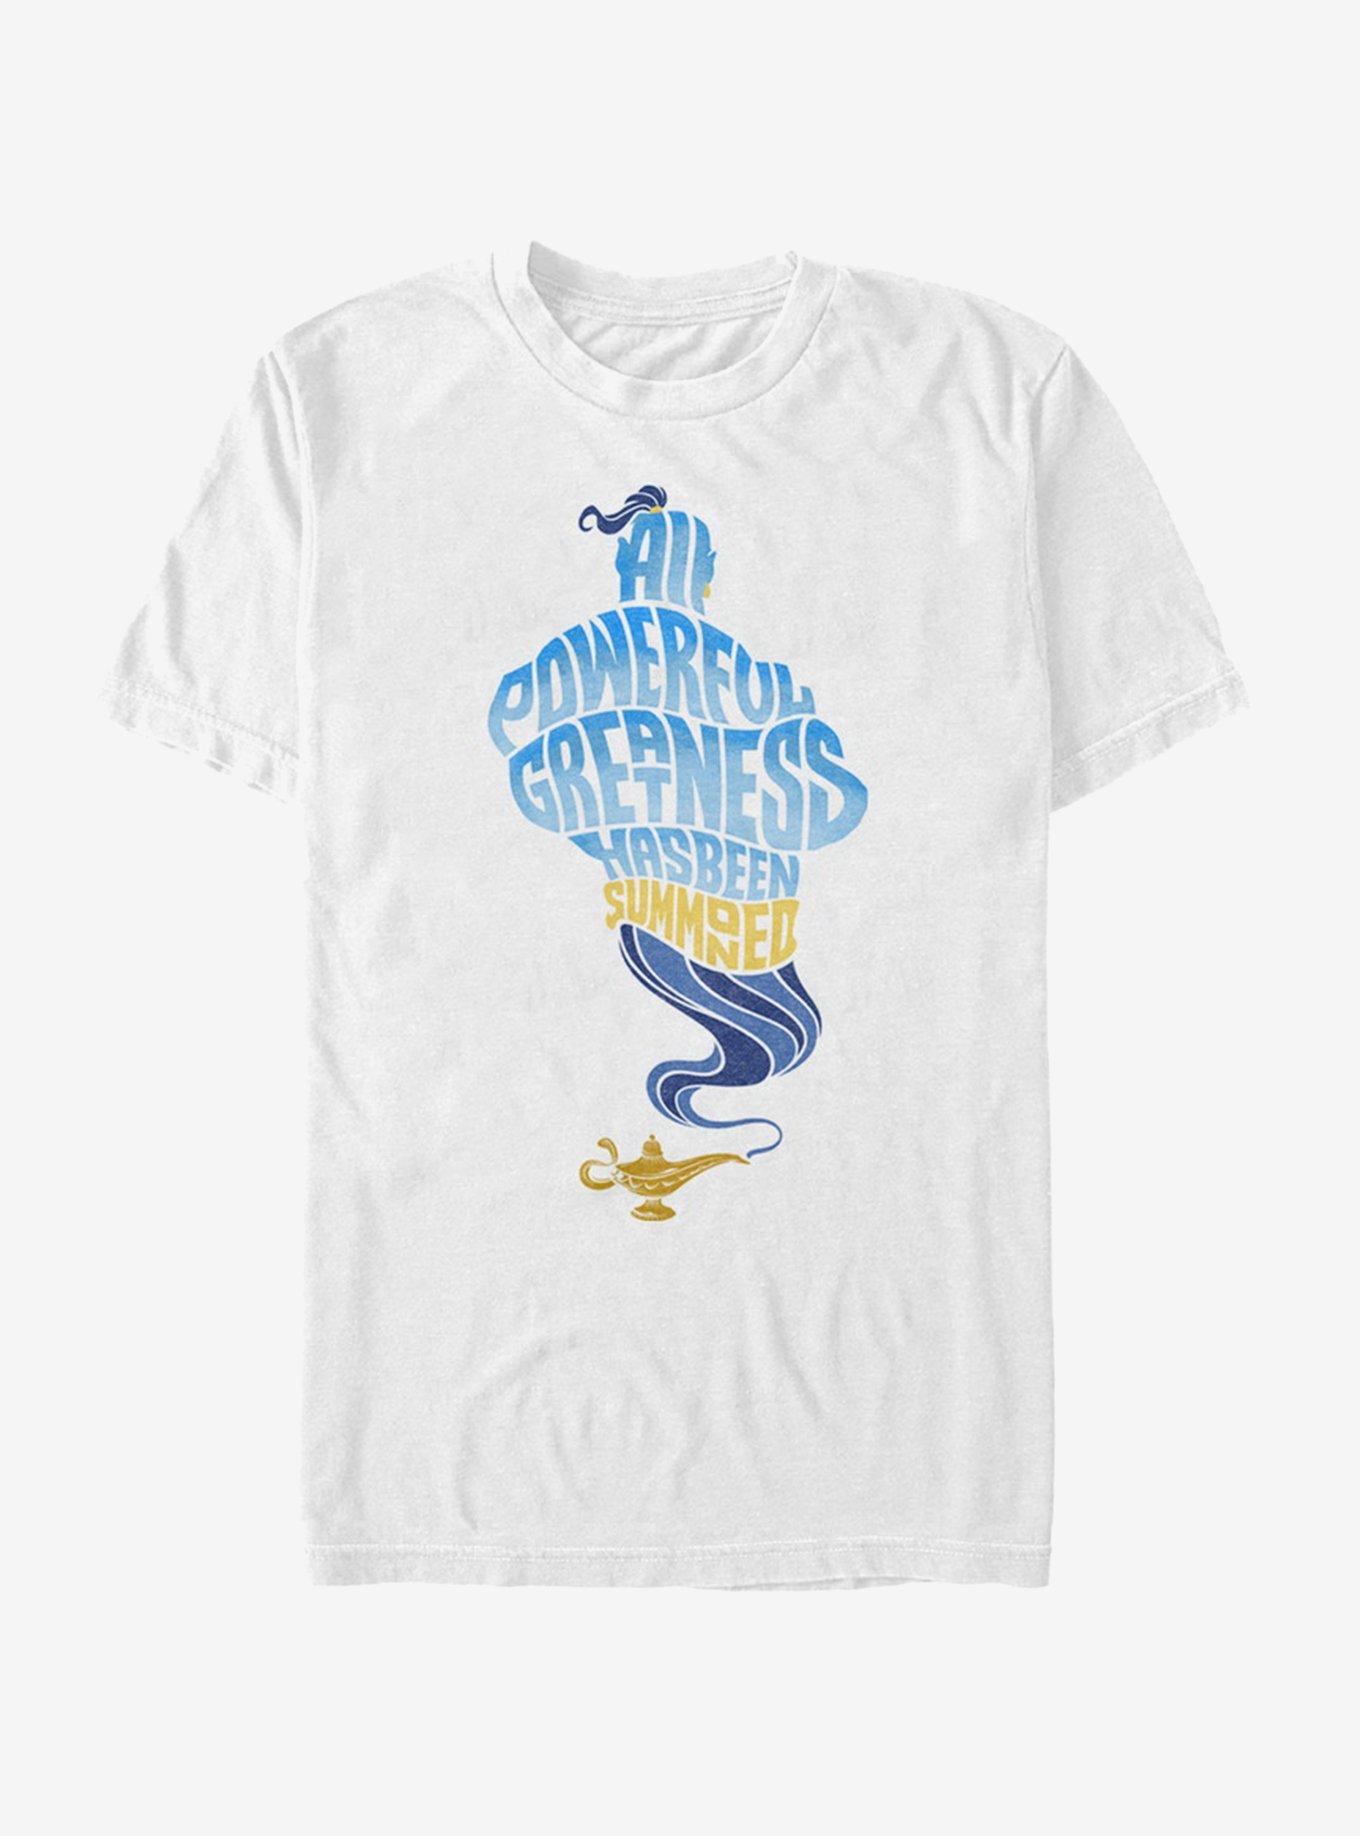 Disney Aladdin 2019 All Powerful Genie T-Shirt, , hi-res